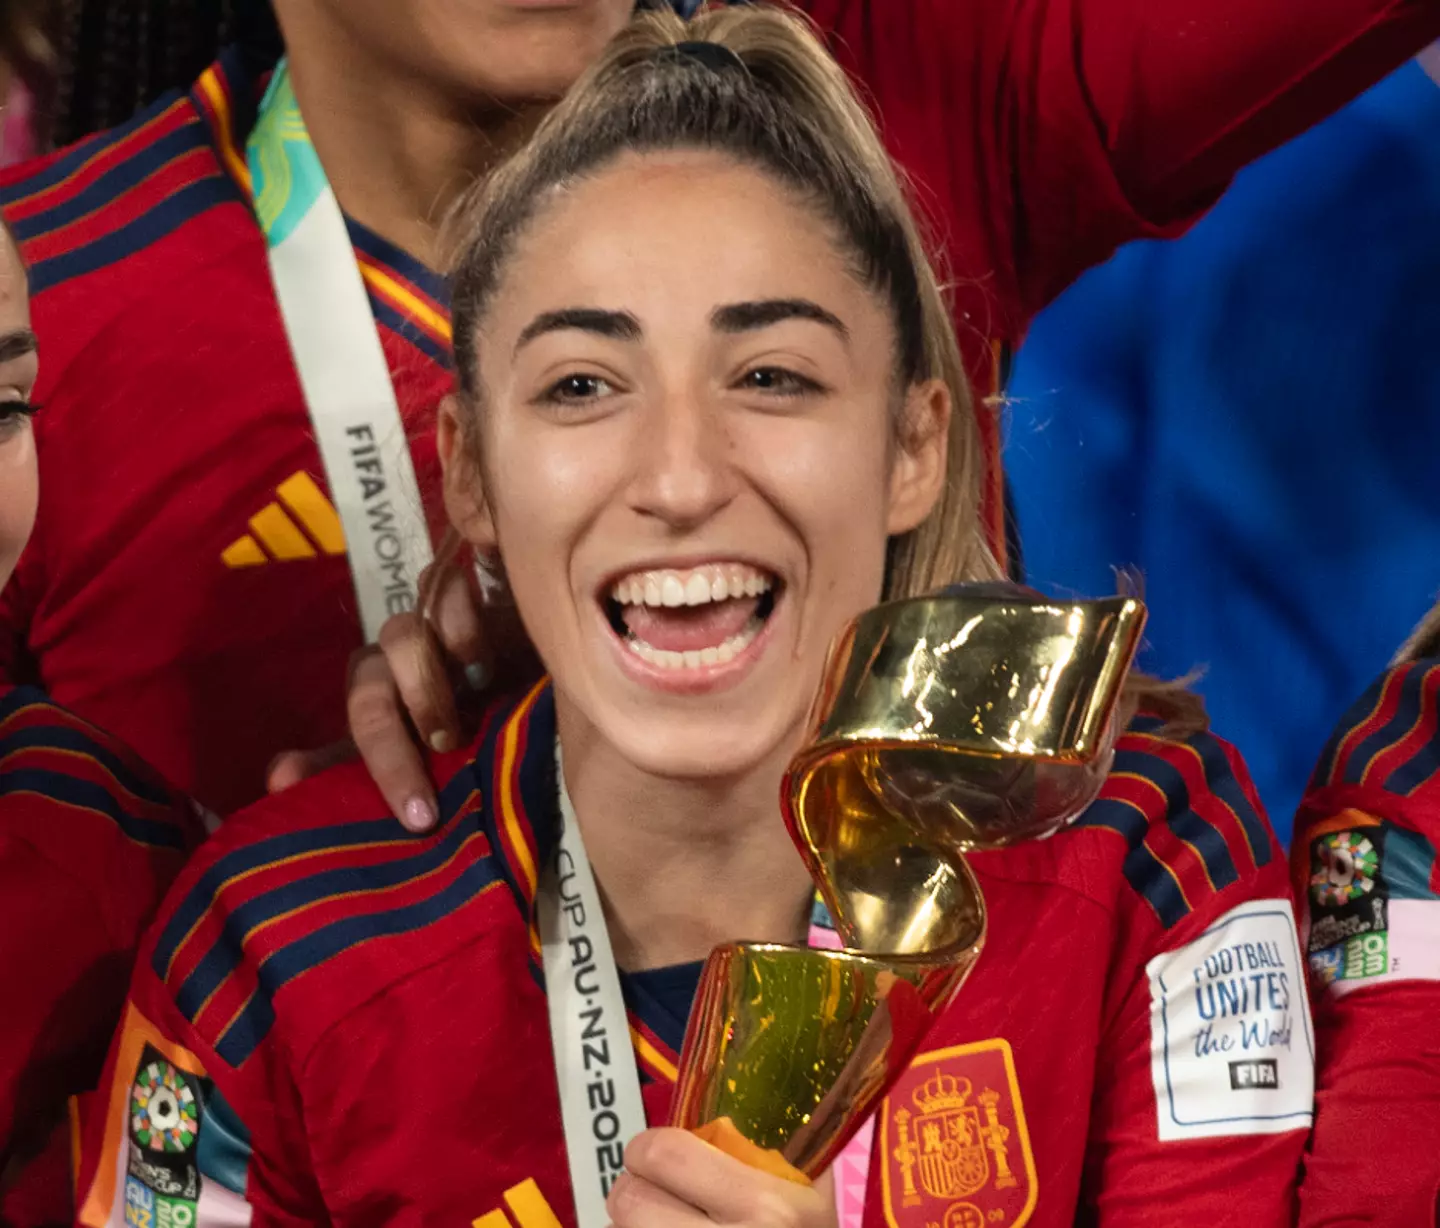 Olga Carmona joined her team in celebrating Spain's win.